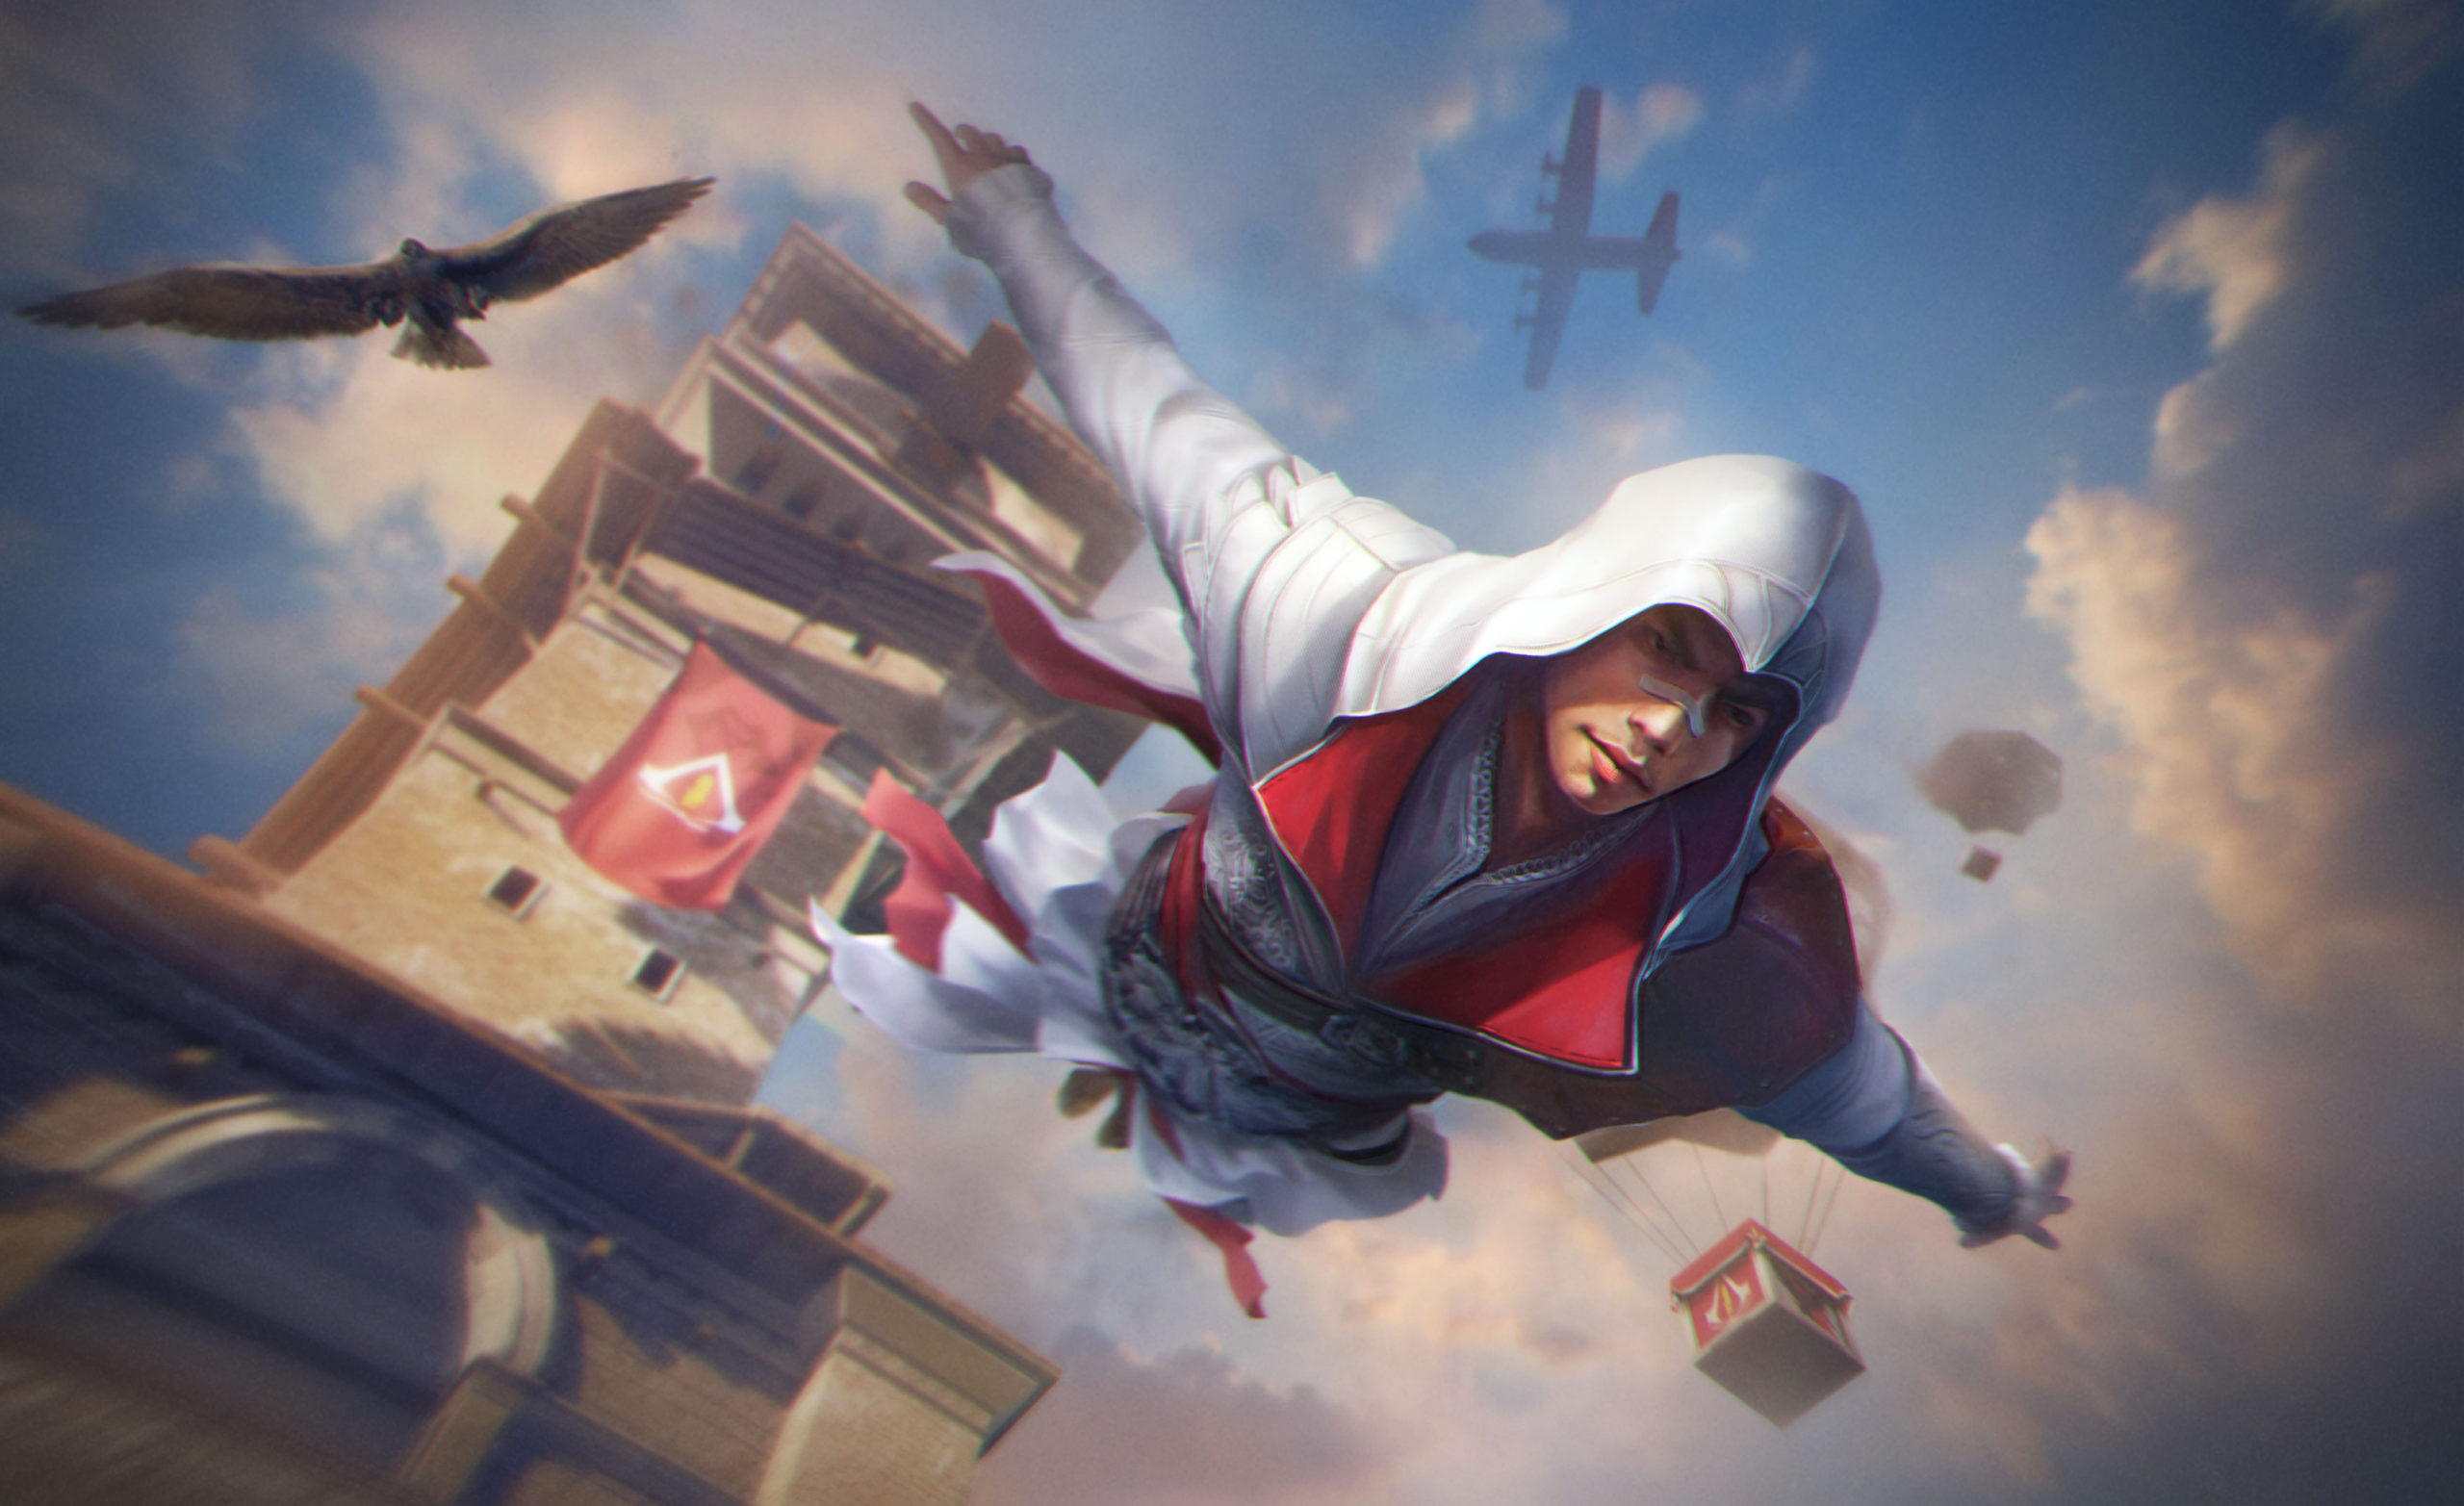 Free Fire hợp tác với Assassin's Creed, mang đến các nội dung và vũ khí mới độc đáo